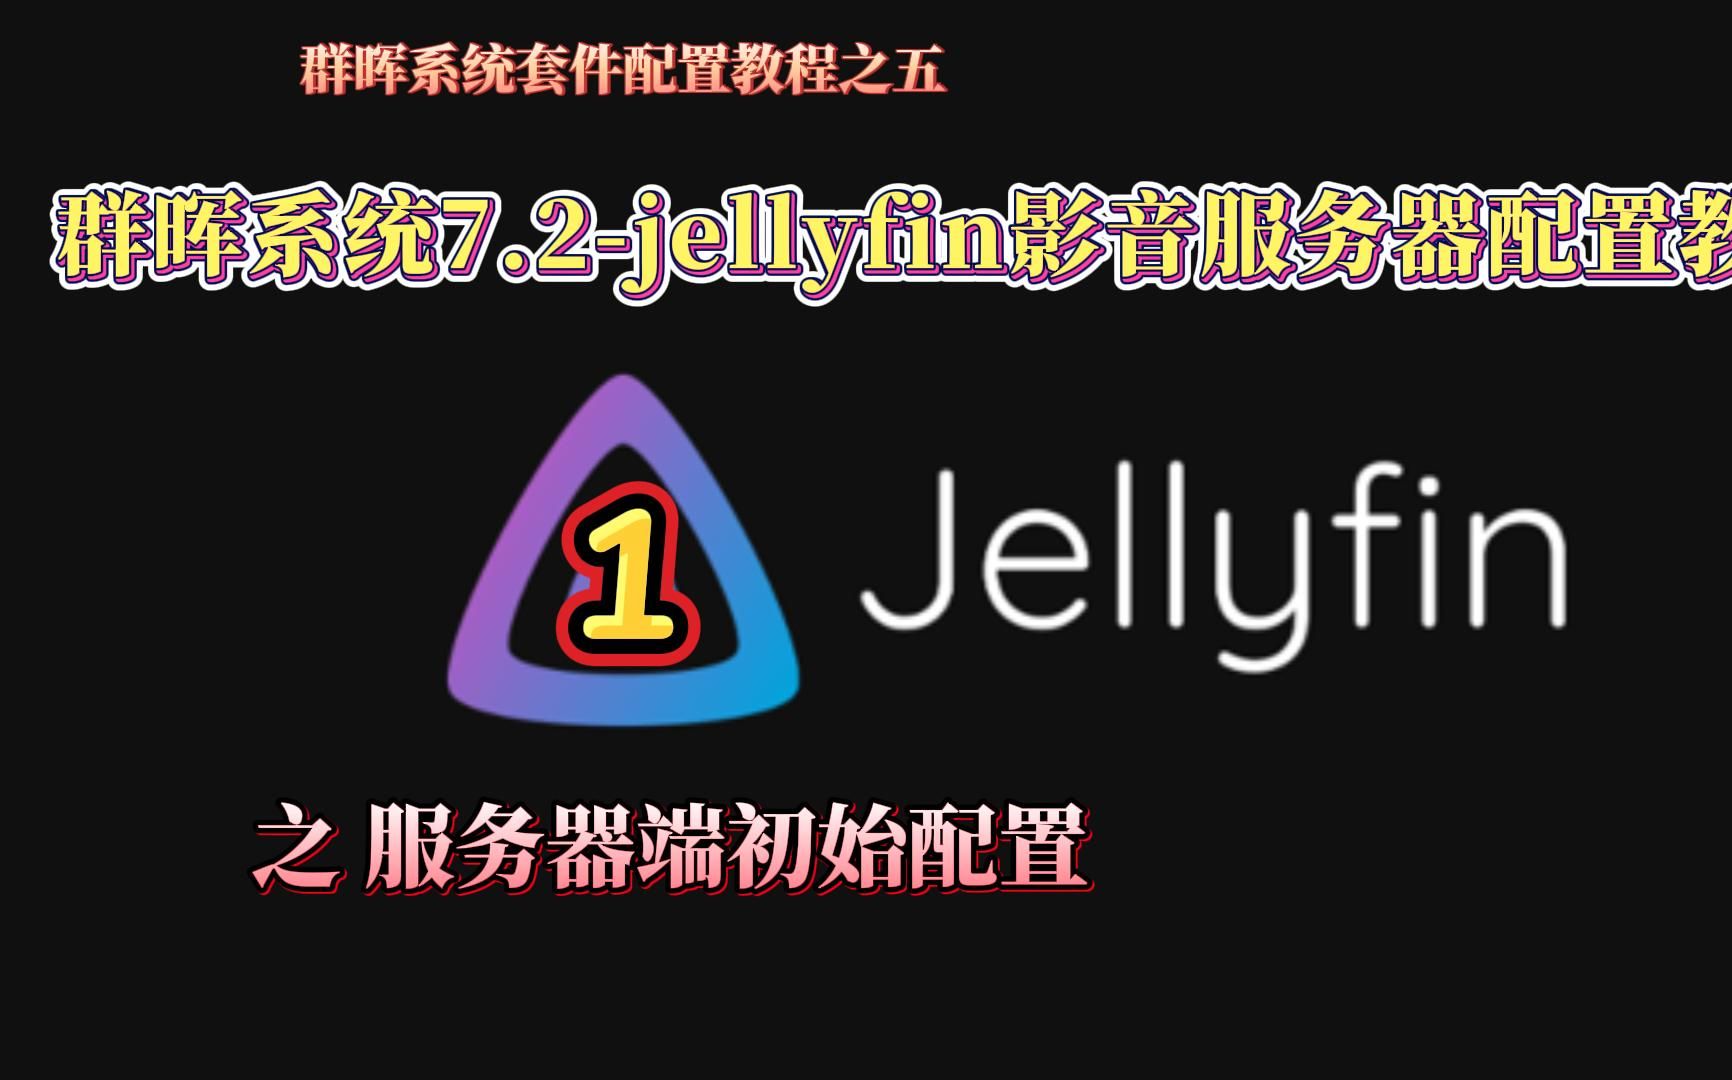 群晖系统7.2版本jellyfin影音服务器套件配置教程1服务器端初始安装与配置